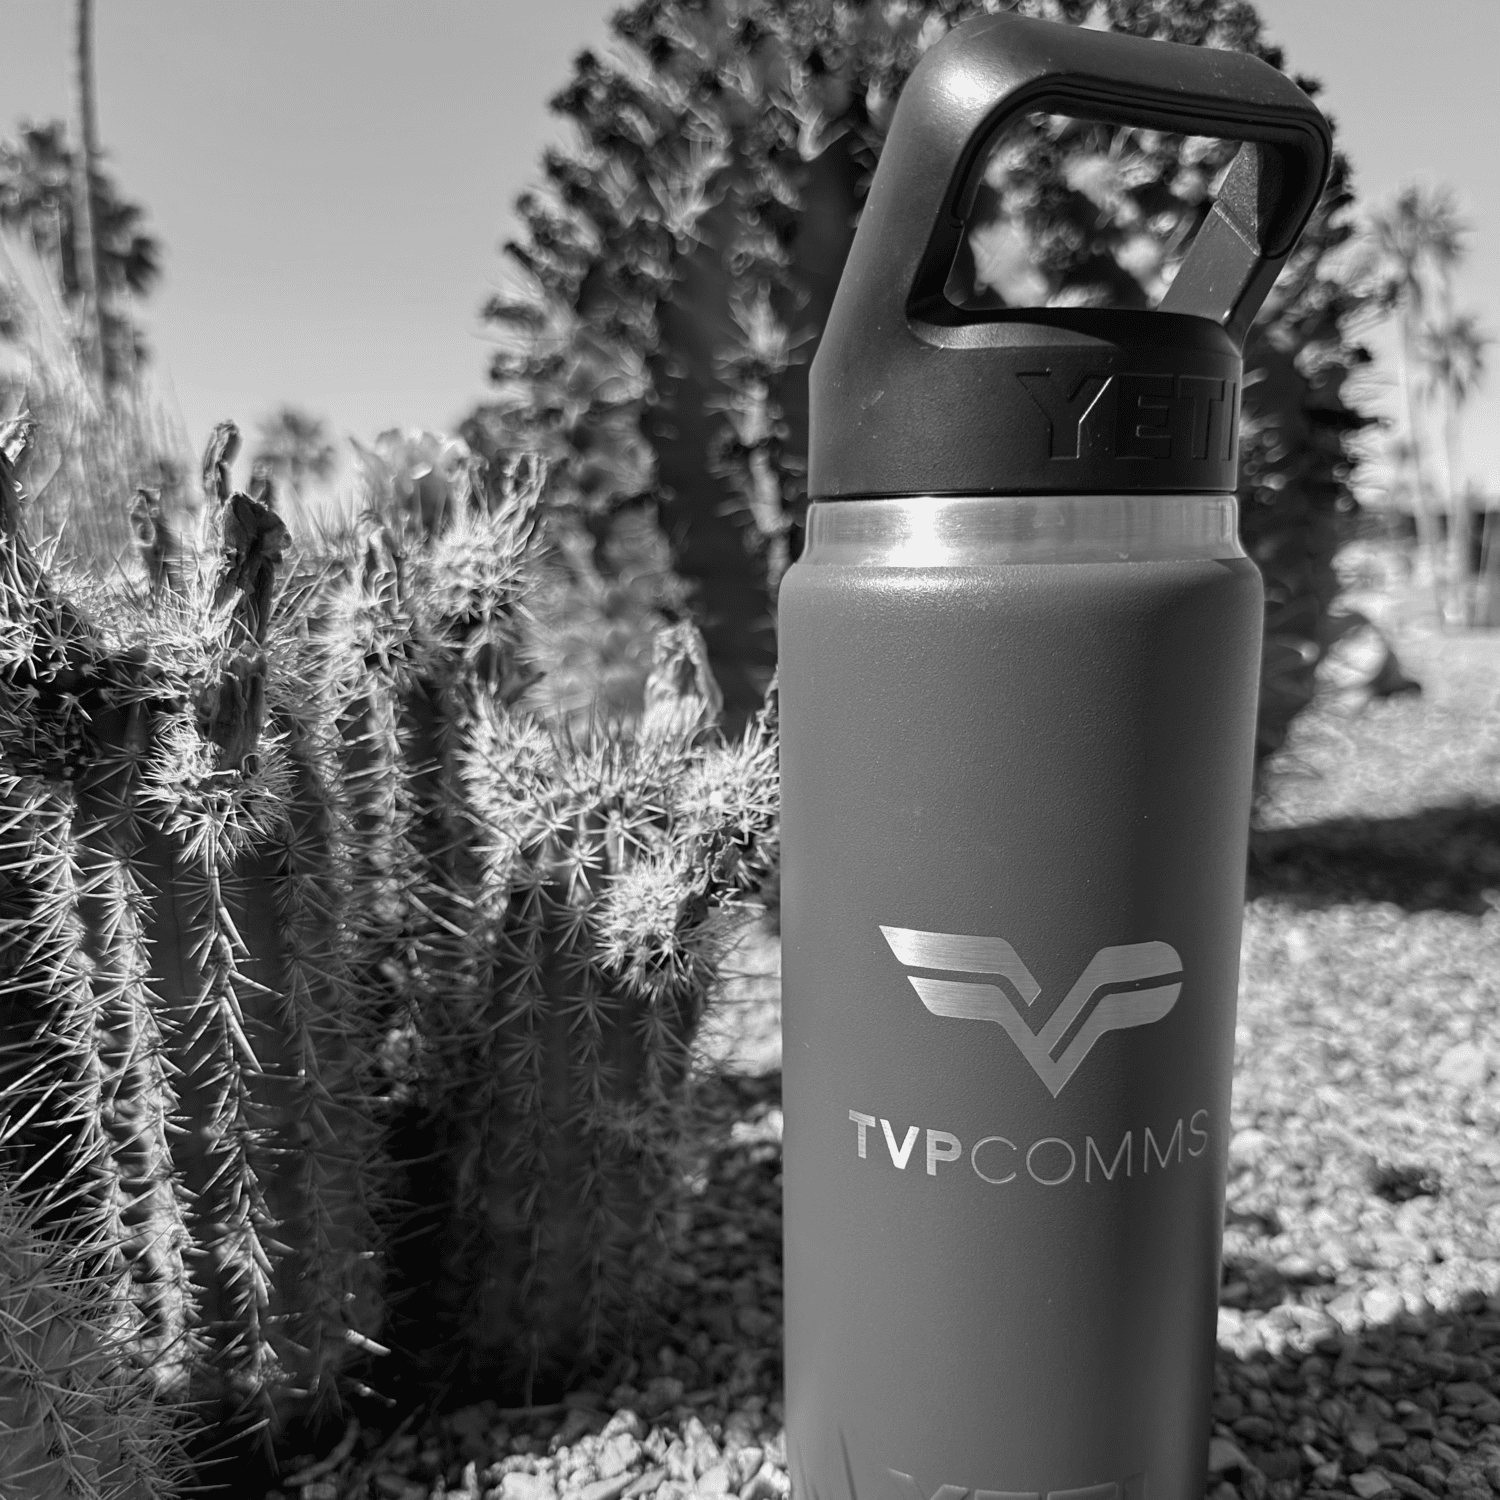 TVP Communications water bottle in the desert